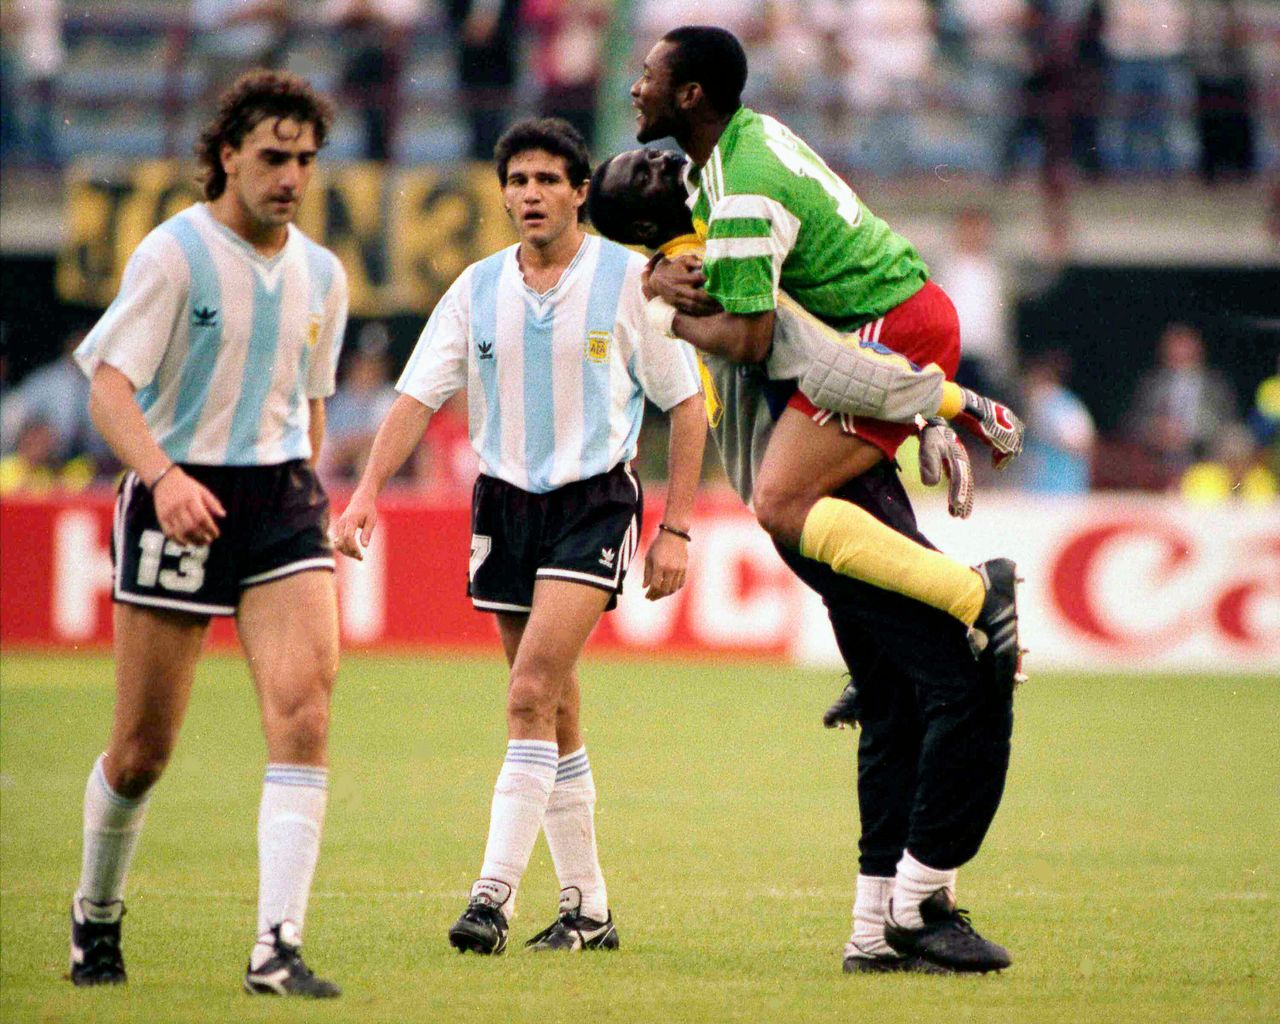 Απογοητευμένοι οι παίκτες της Αργεντινής Νέστορ Λορέντζο (με το νούμερο 13) και Χόρχε Μπουρουσάγα, αποχωρούν από τον αγωνιστικό χώρο του Τζουζέπε Μεάτσα στο Μιλάνο, μετά την ήττα με 1-0 από το Καμερούν στο εναρκτήριο παιχνίδι του Italia '90, στις 8 Ιουνίου.